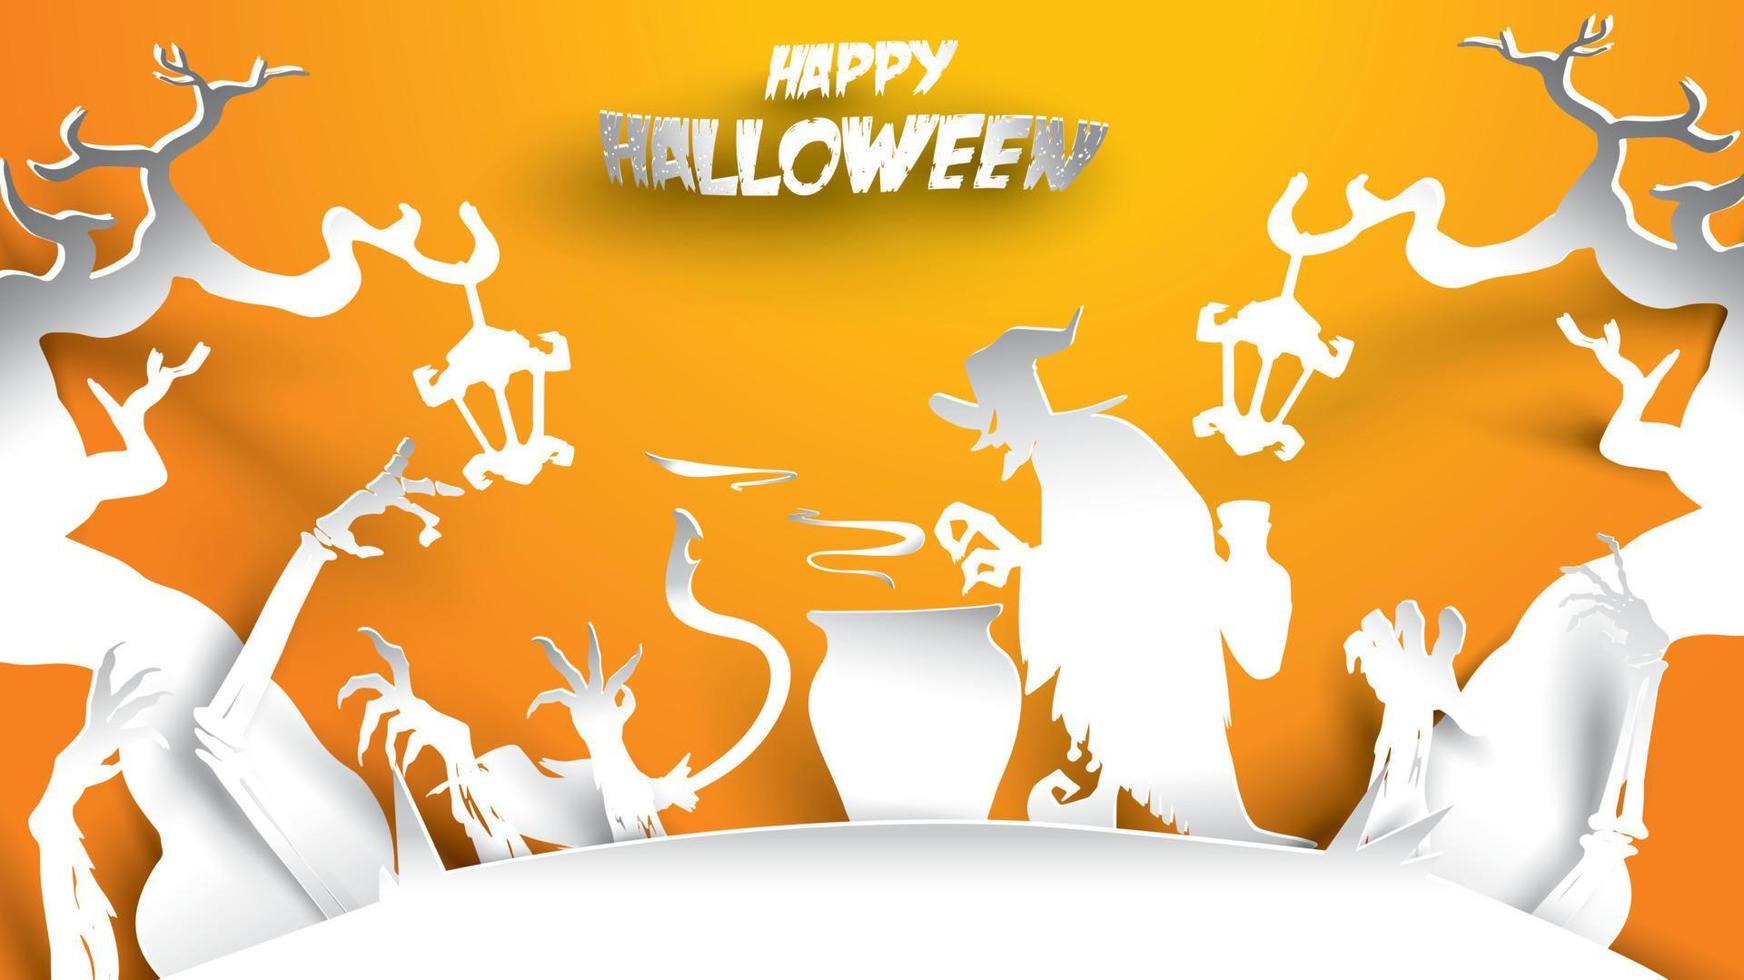 sfondo di halloween con strega, albero infestato e mano di zombi in stile di intaglio di arte della carta. banner, poster, volantino o modello di invito per feste. illustrazione vettoriale. vettore